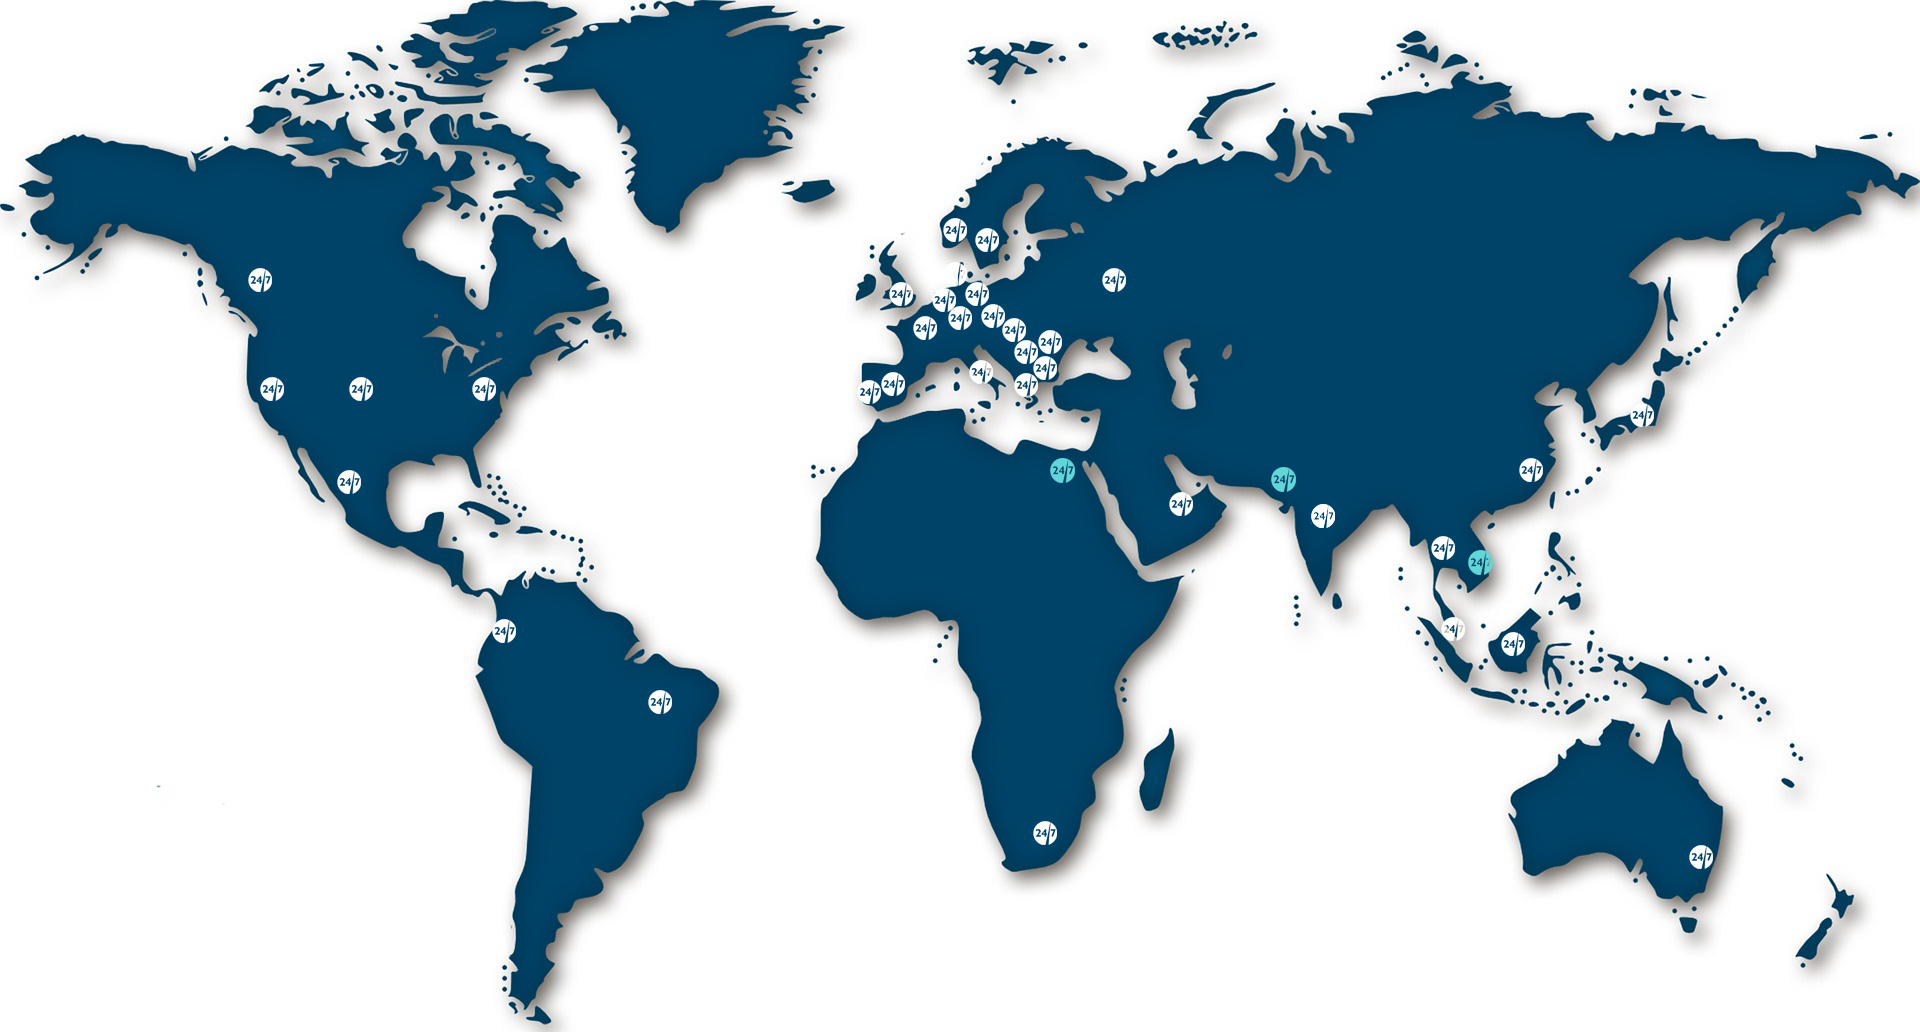 Weltkarte in Dunkelblau mit weißen Logo-Rondellen an UX24/7-Standorten